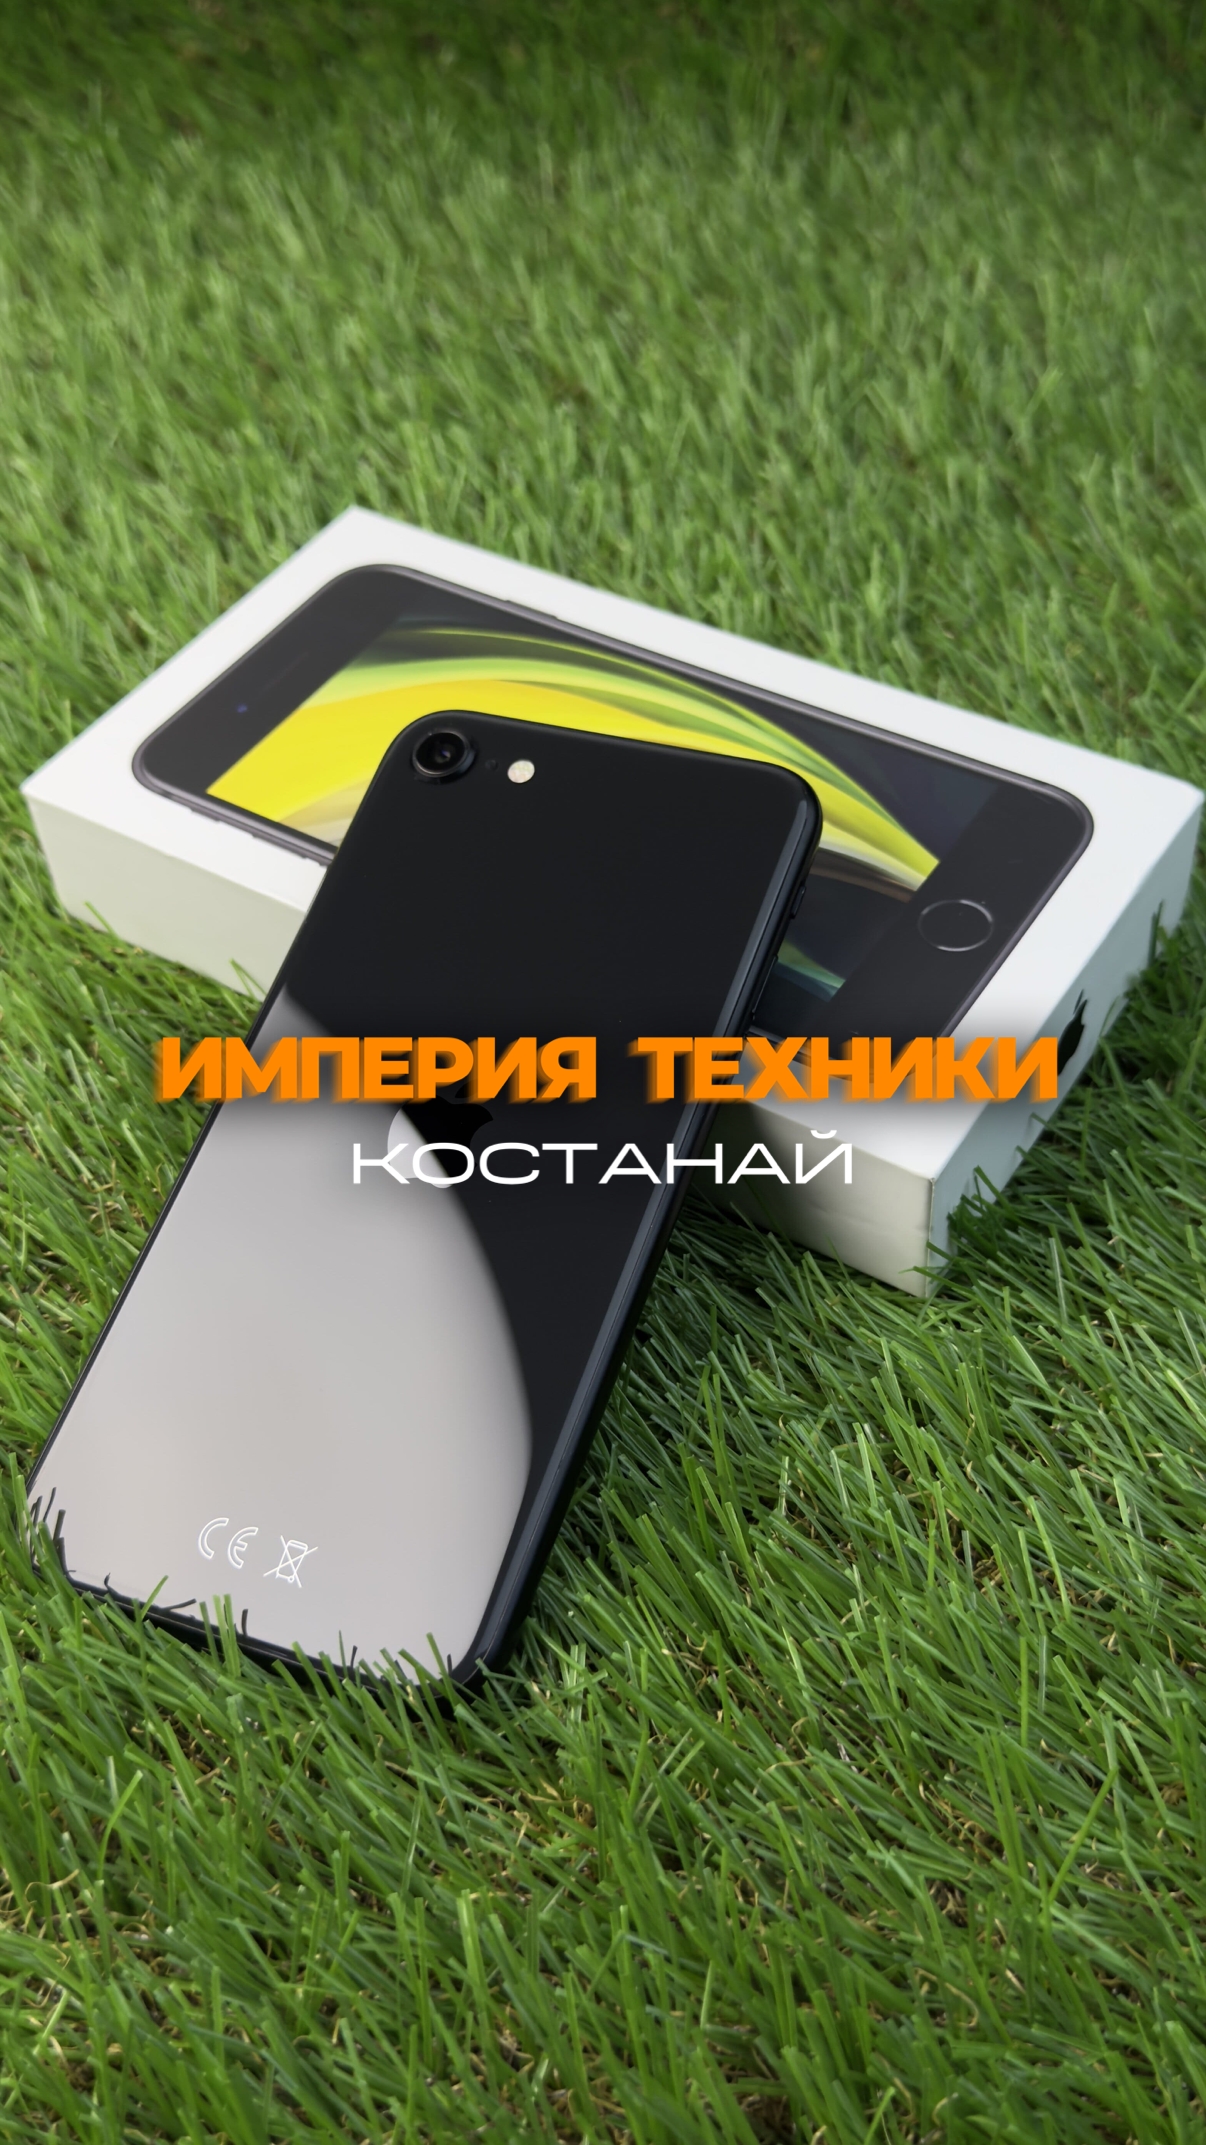 Мобильный телефон Xiaomi A1 (Фото)